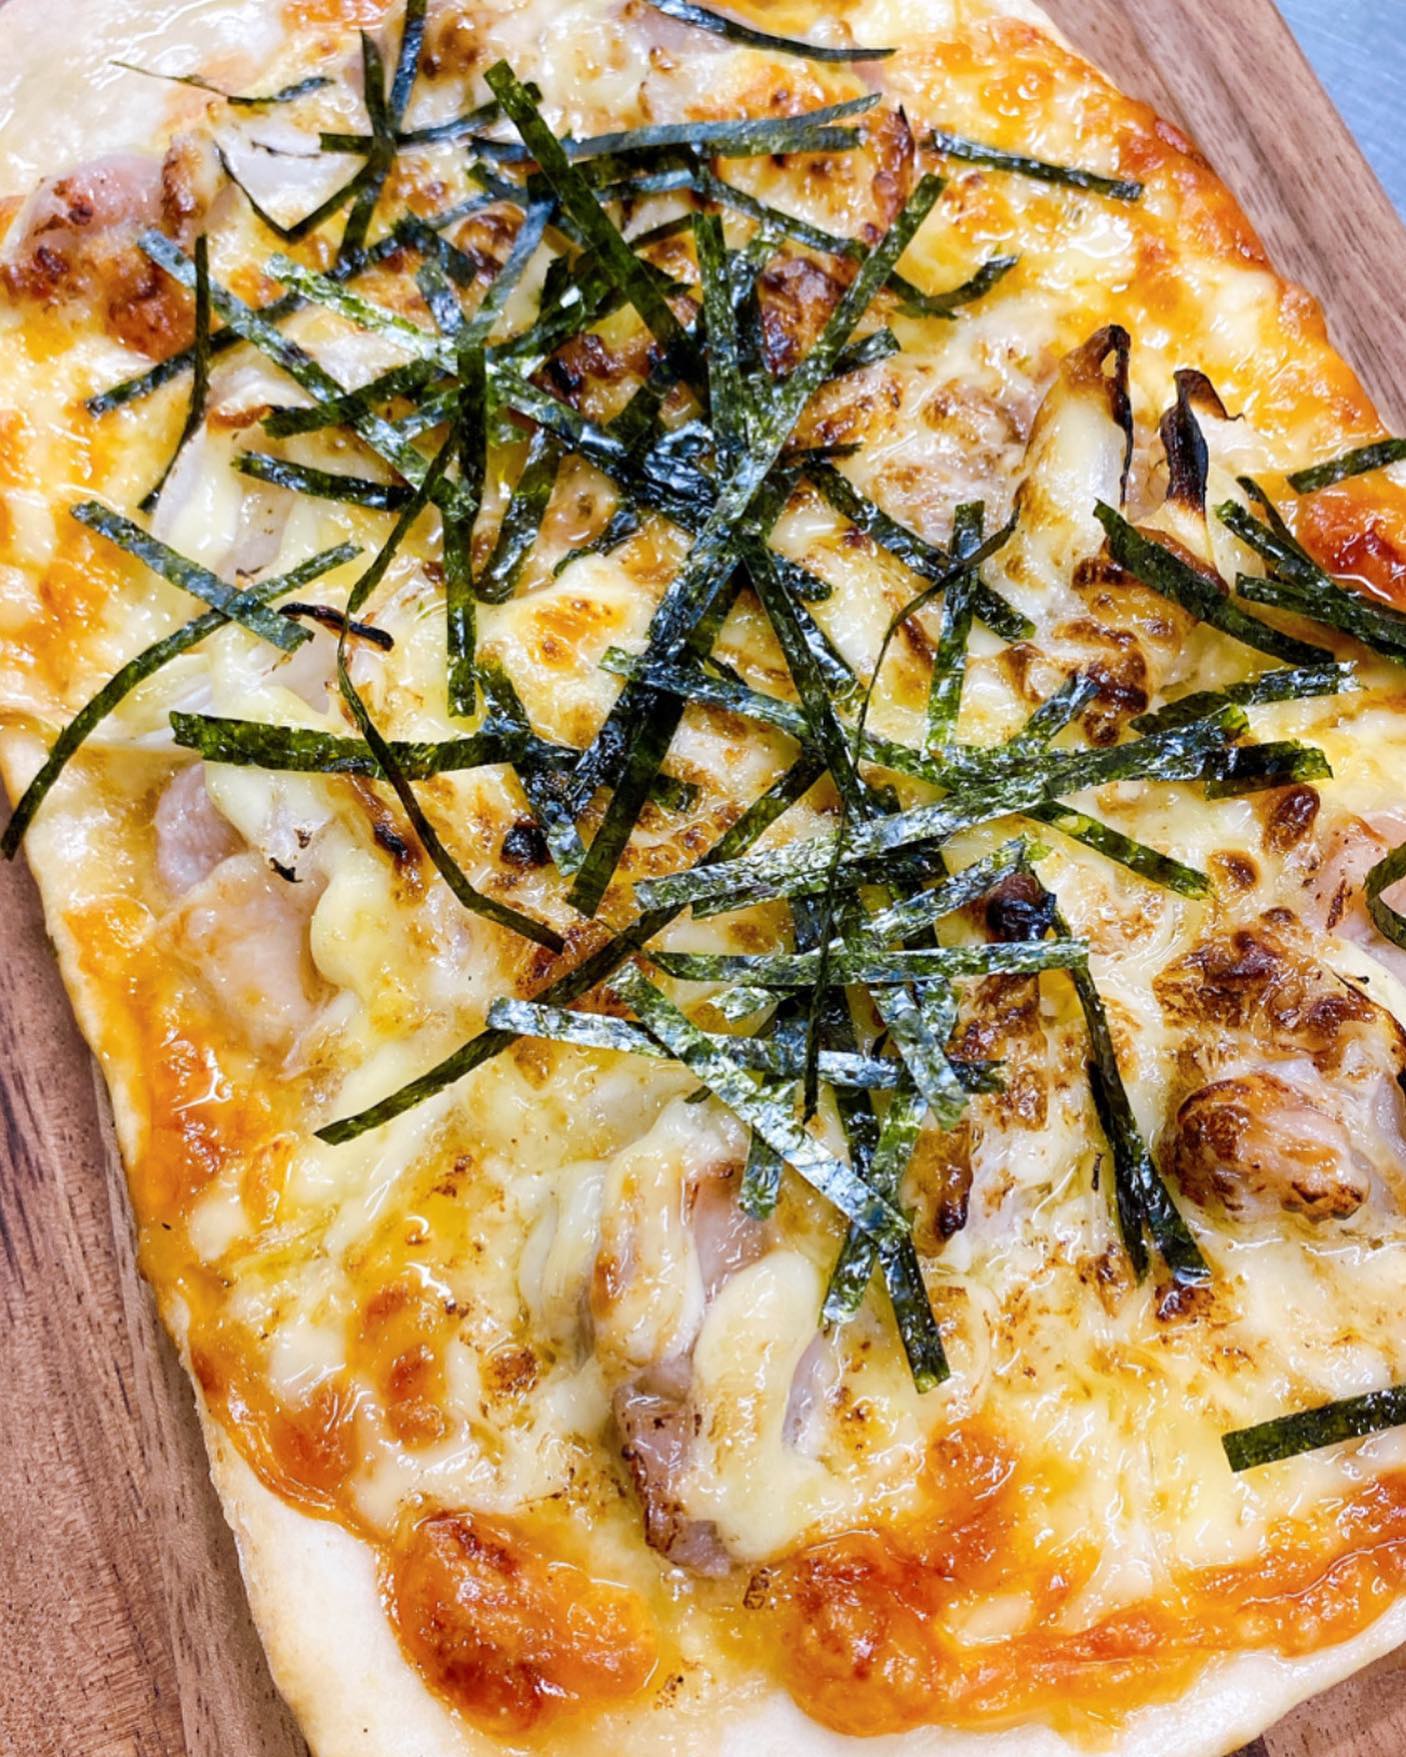 ピザ畑テイクアウトピザ
照り焼きチキンマヨチーズ
¥800税込ボリューム満点
おやつにピザなんてどうですか？